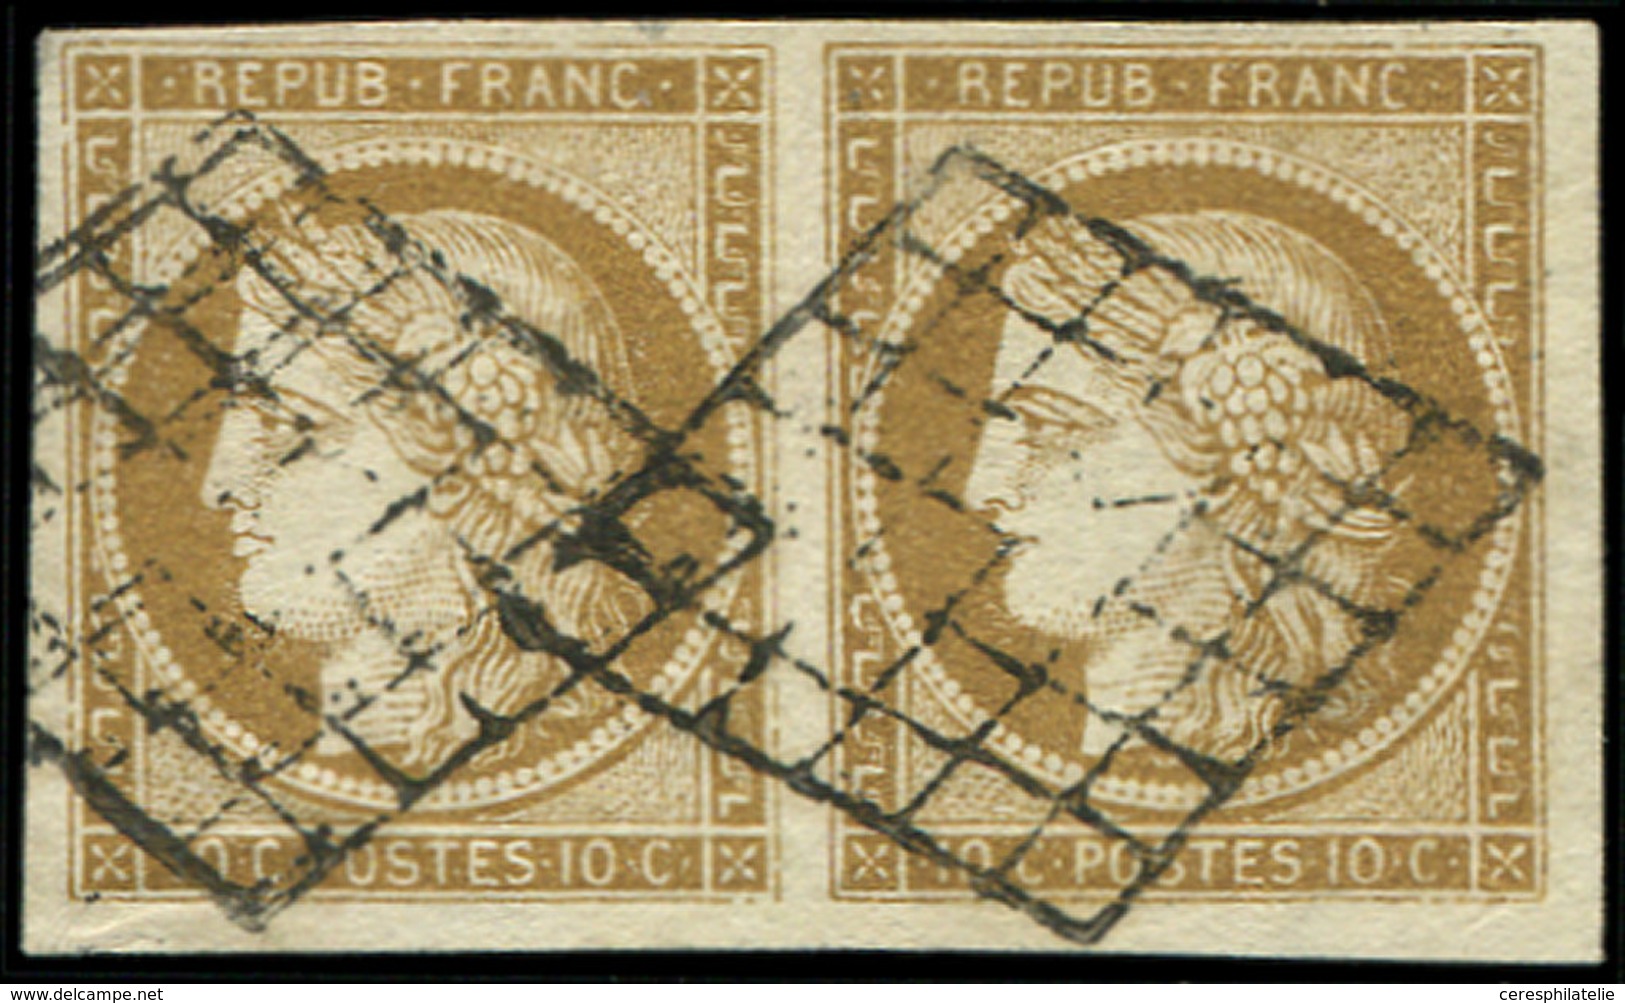 EMISSION DE 1849 - 1b   10c. Bistre-VERDATRE, PAIRE Oblitérée GRILLE, TB. C - 1849-1850 Ceres